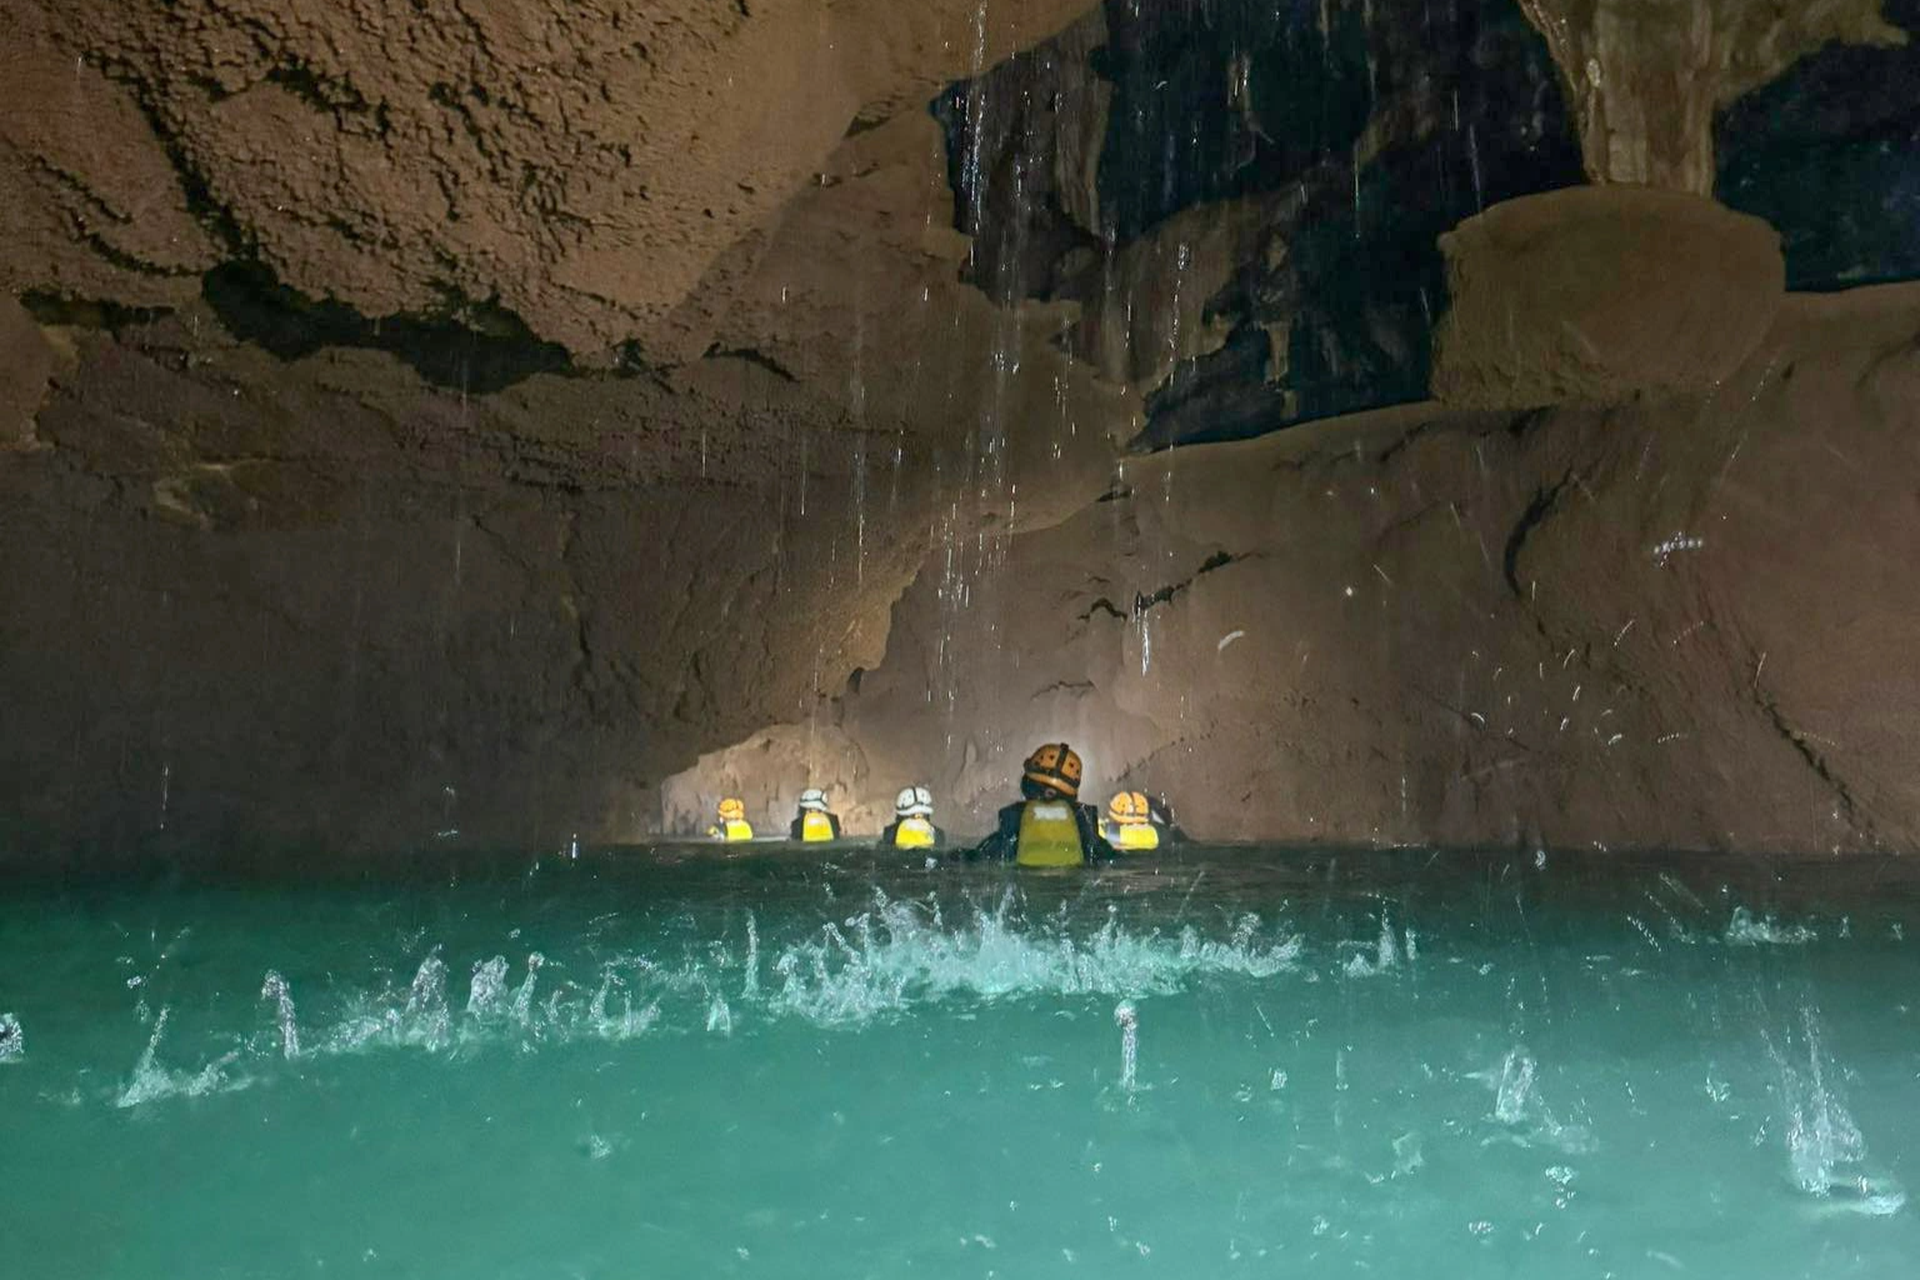 Vẻ đẹp siêu thực trong hang động có hồ nước bí ẩn treo lơ lửng - 3